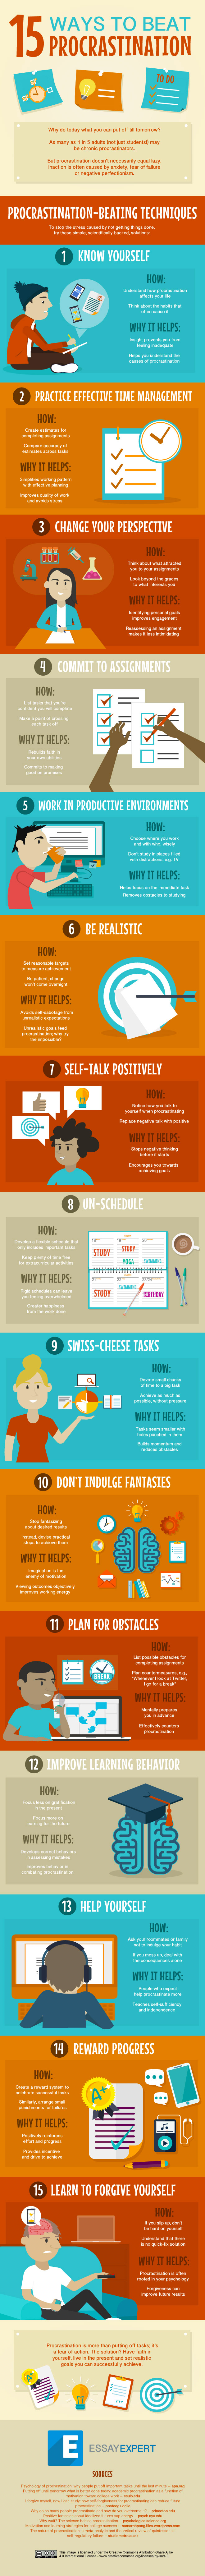 15 Ways to overcome procrastination infographic